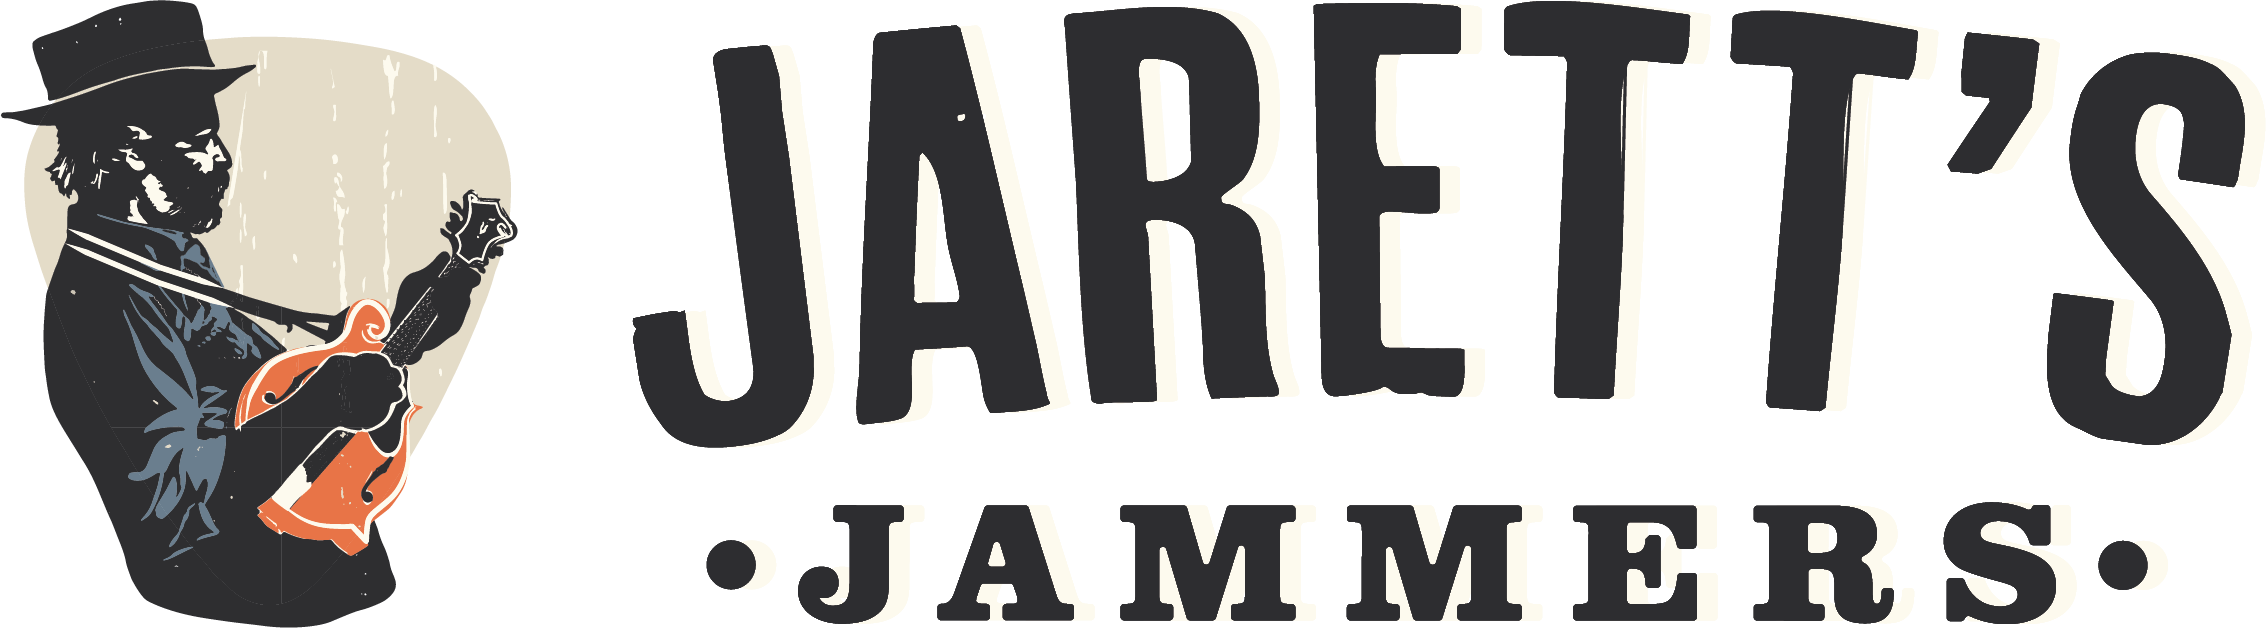 Jaretts Jammers